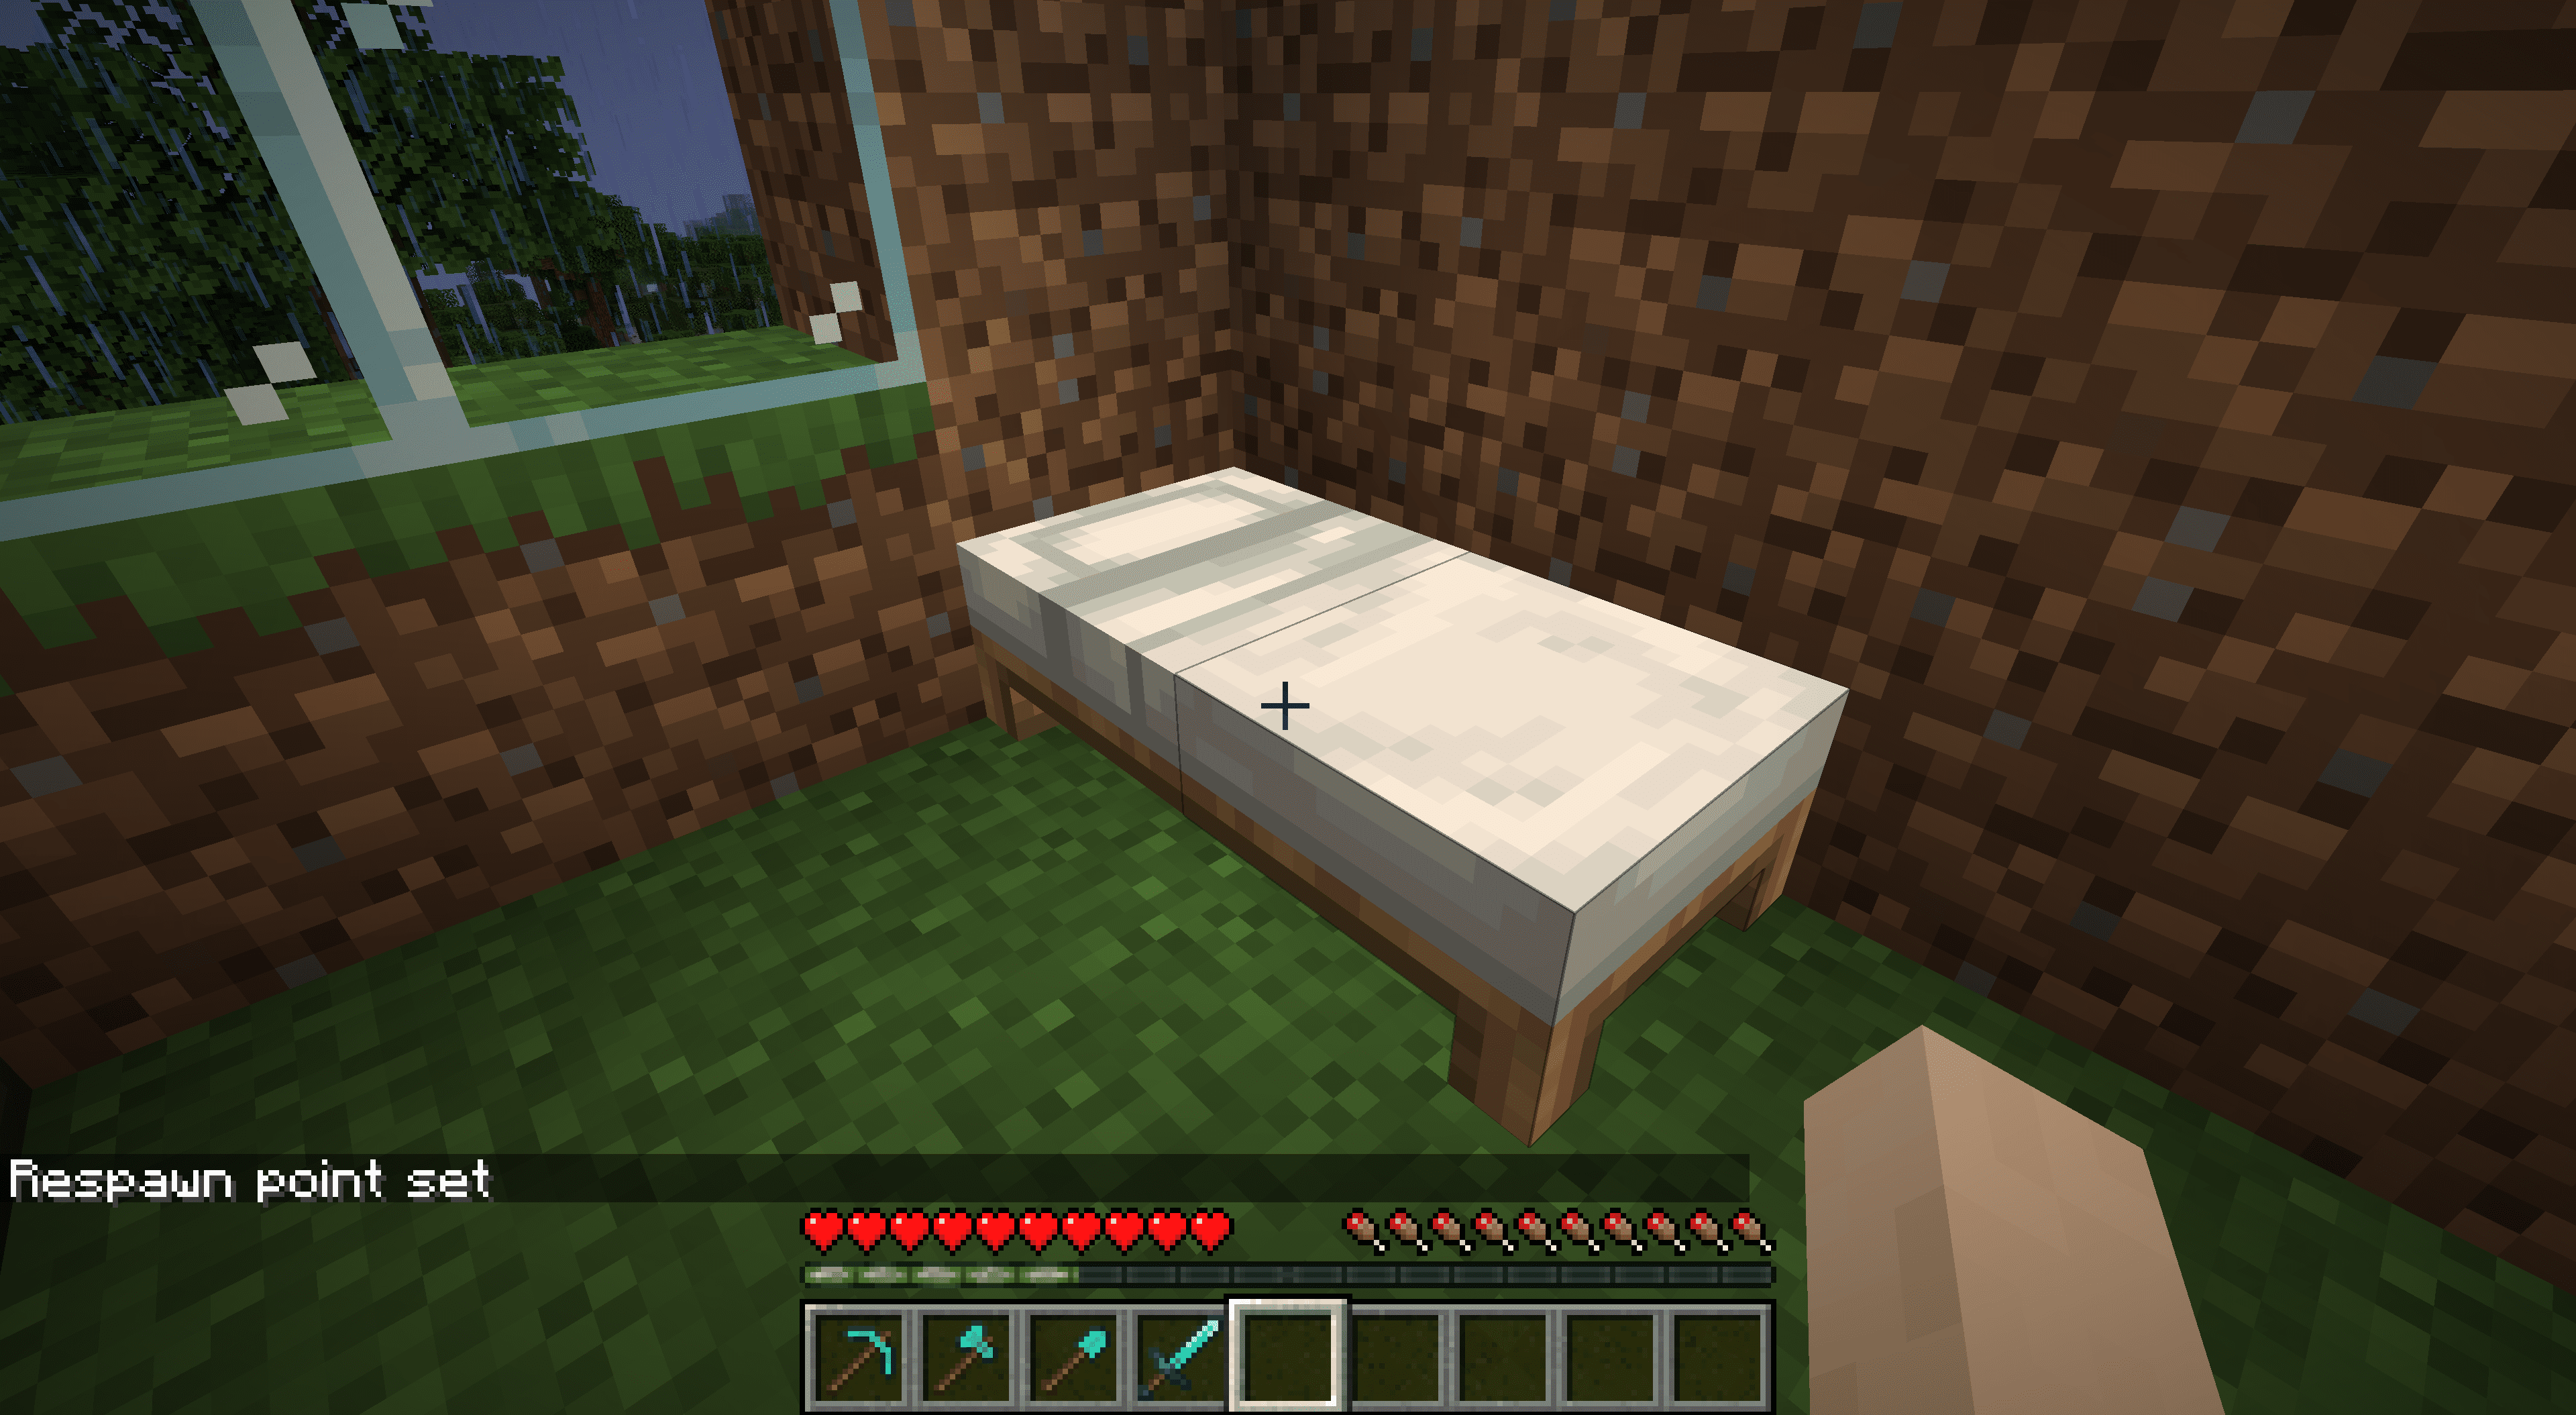 En säng i Minecraft.